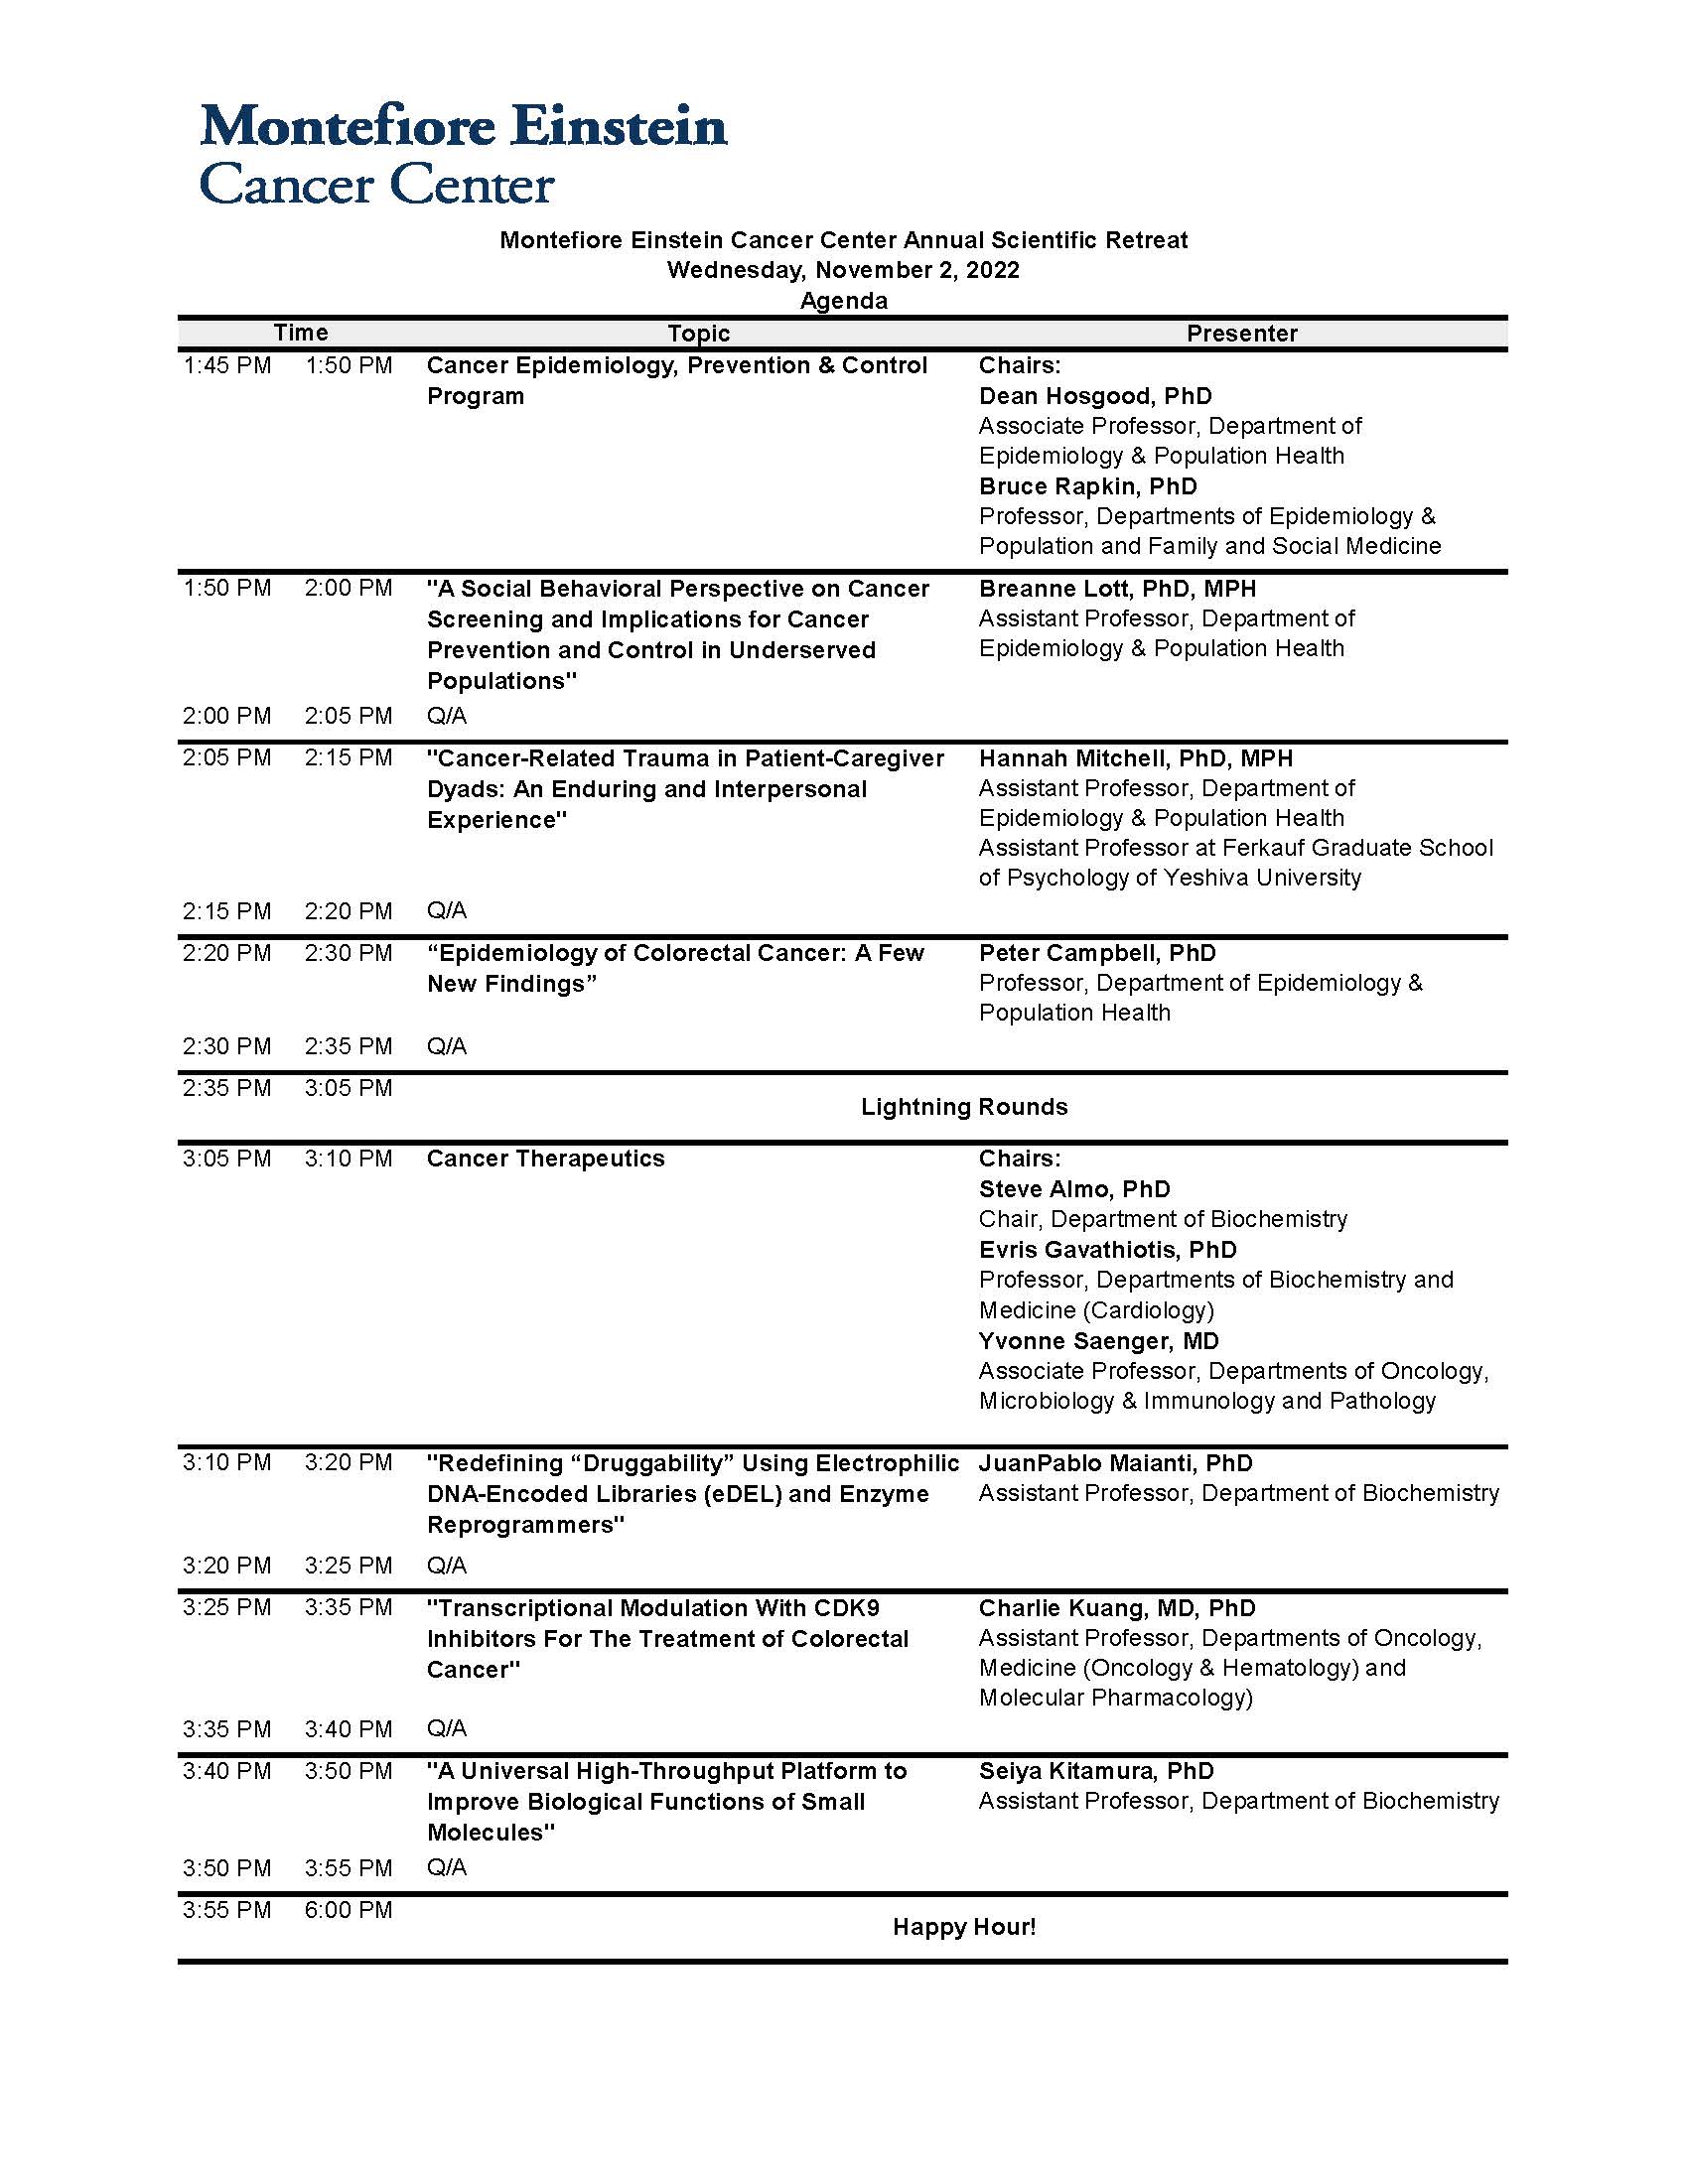 MECC Annual Scientific Retreat 2022 Agenda – Page 2